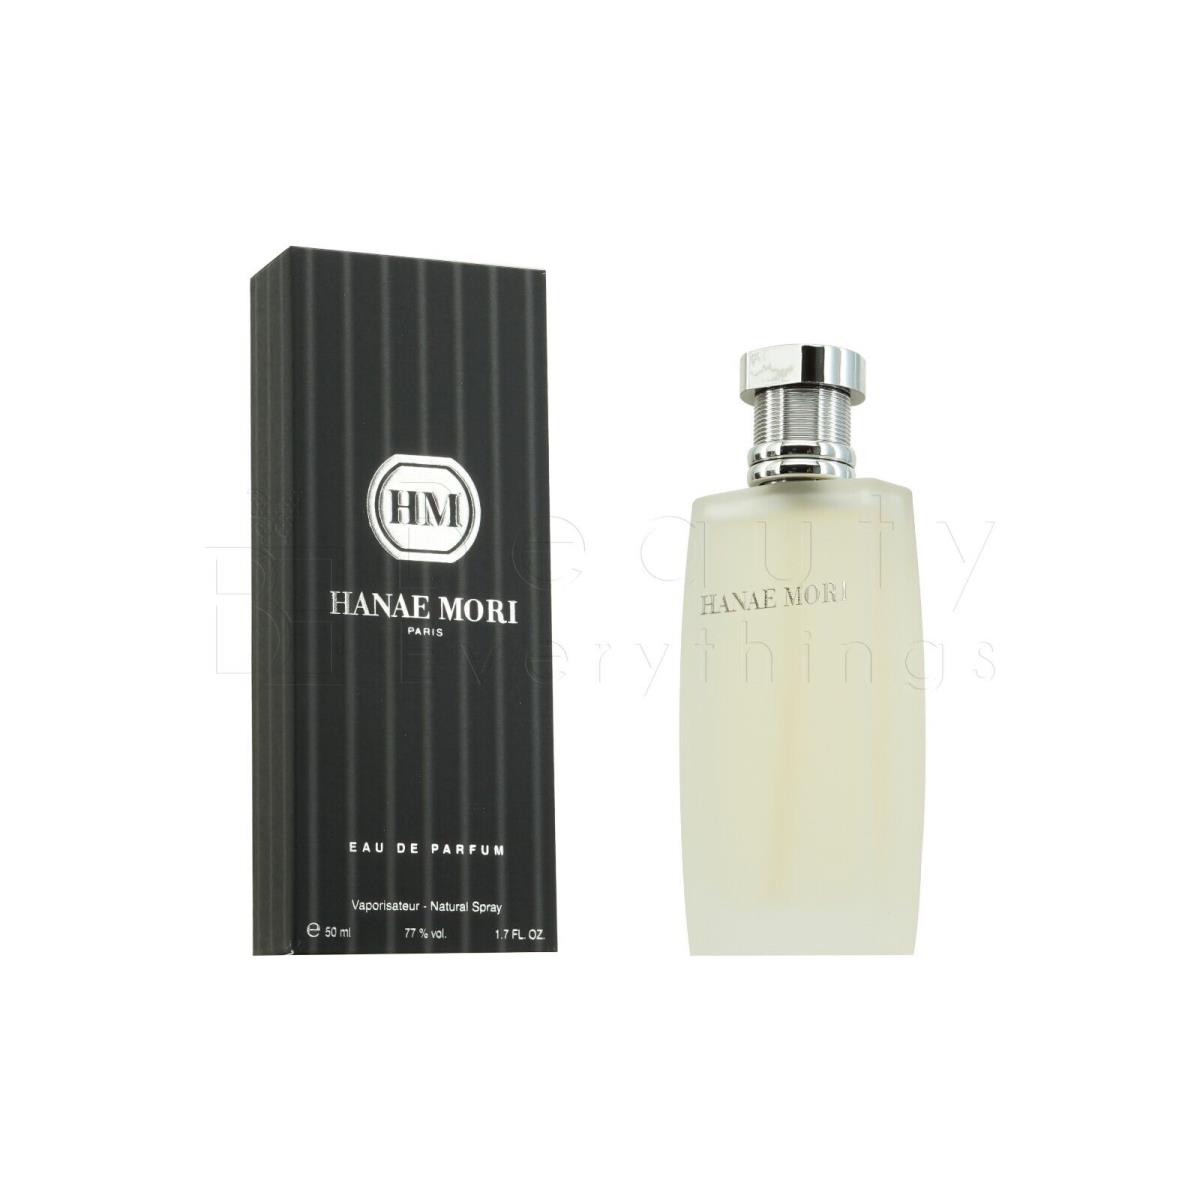 HM by Hanae Mori 1.7oz / 50ml Eau De Parfum Spray For Men